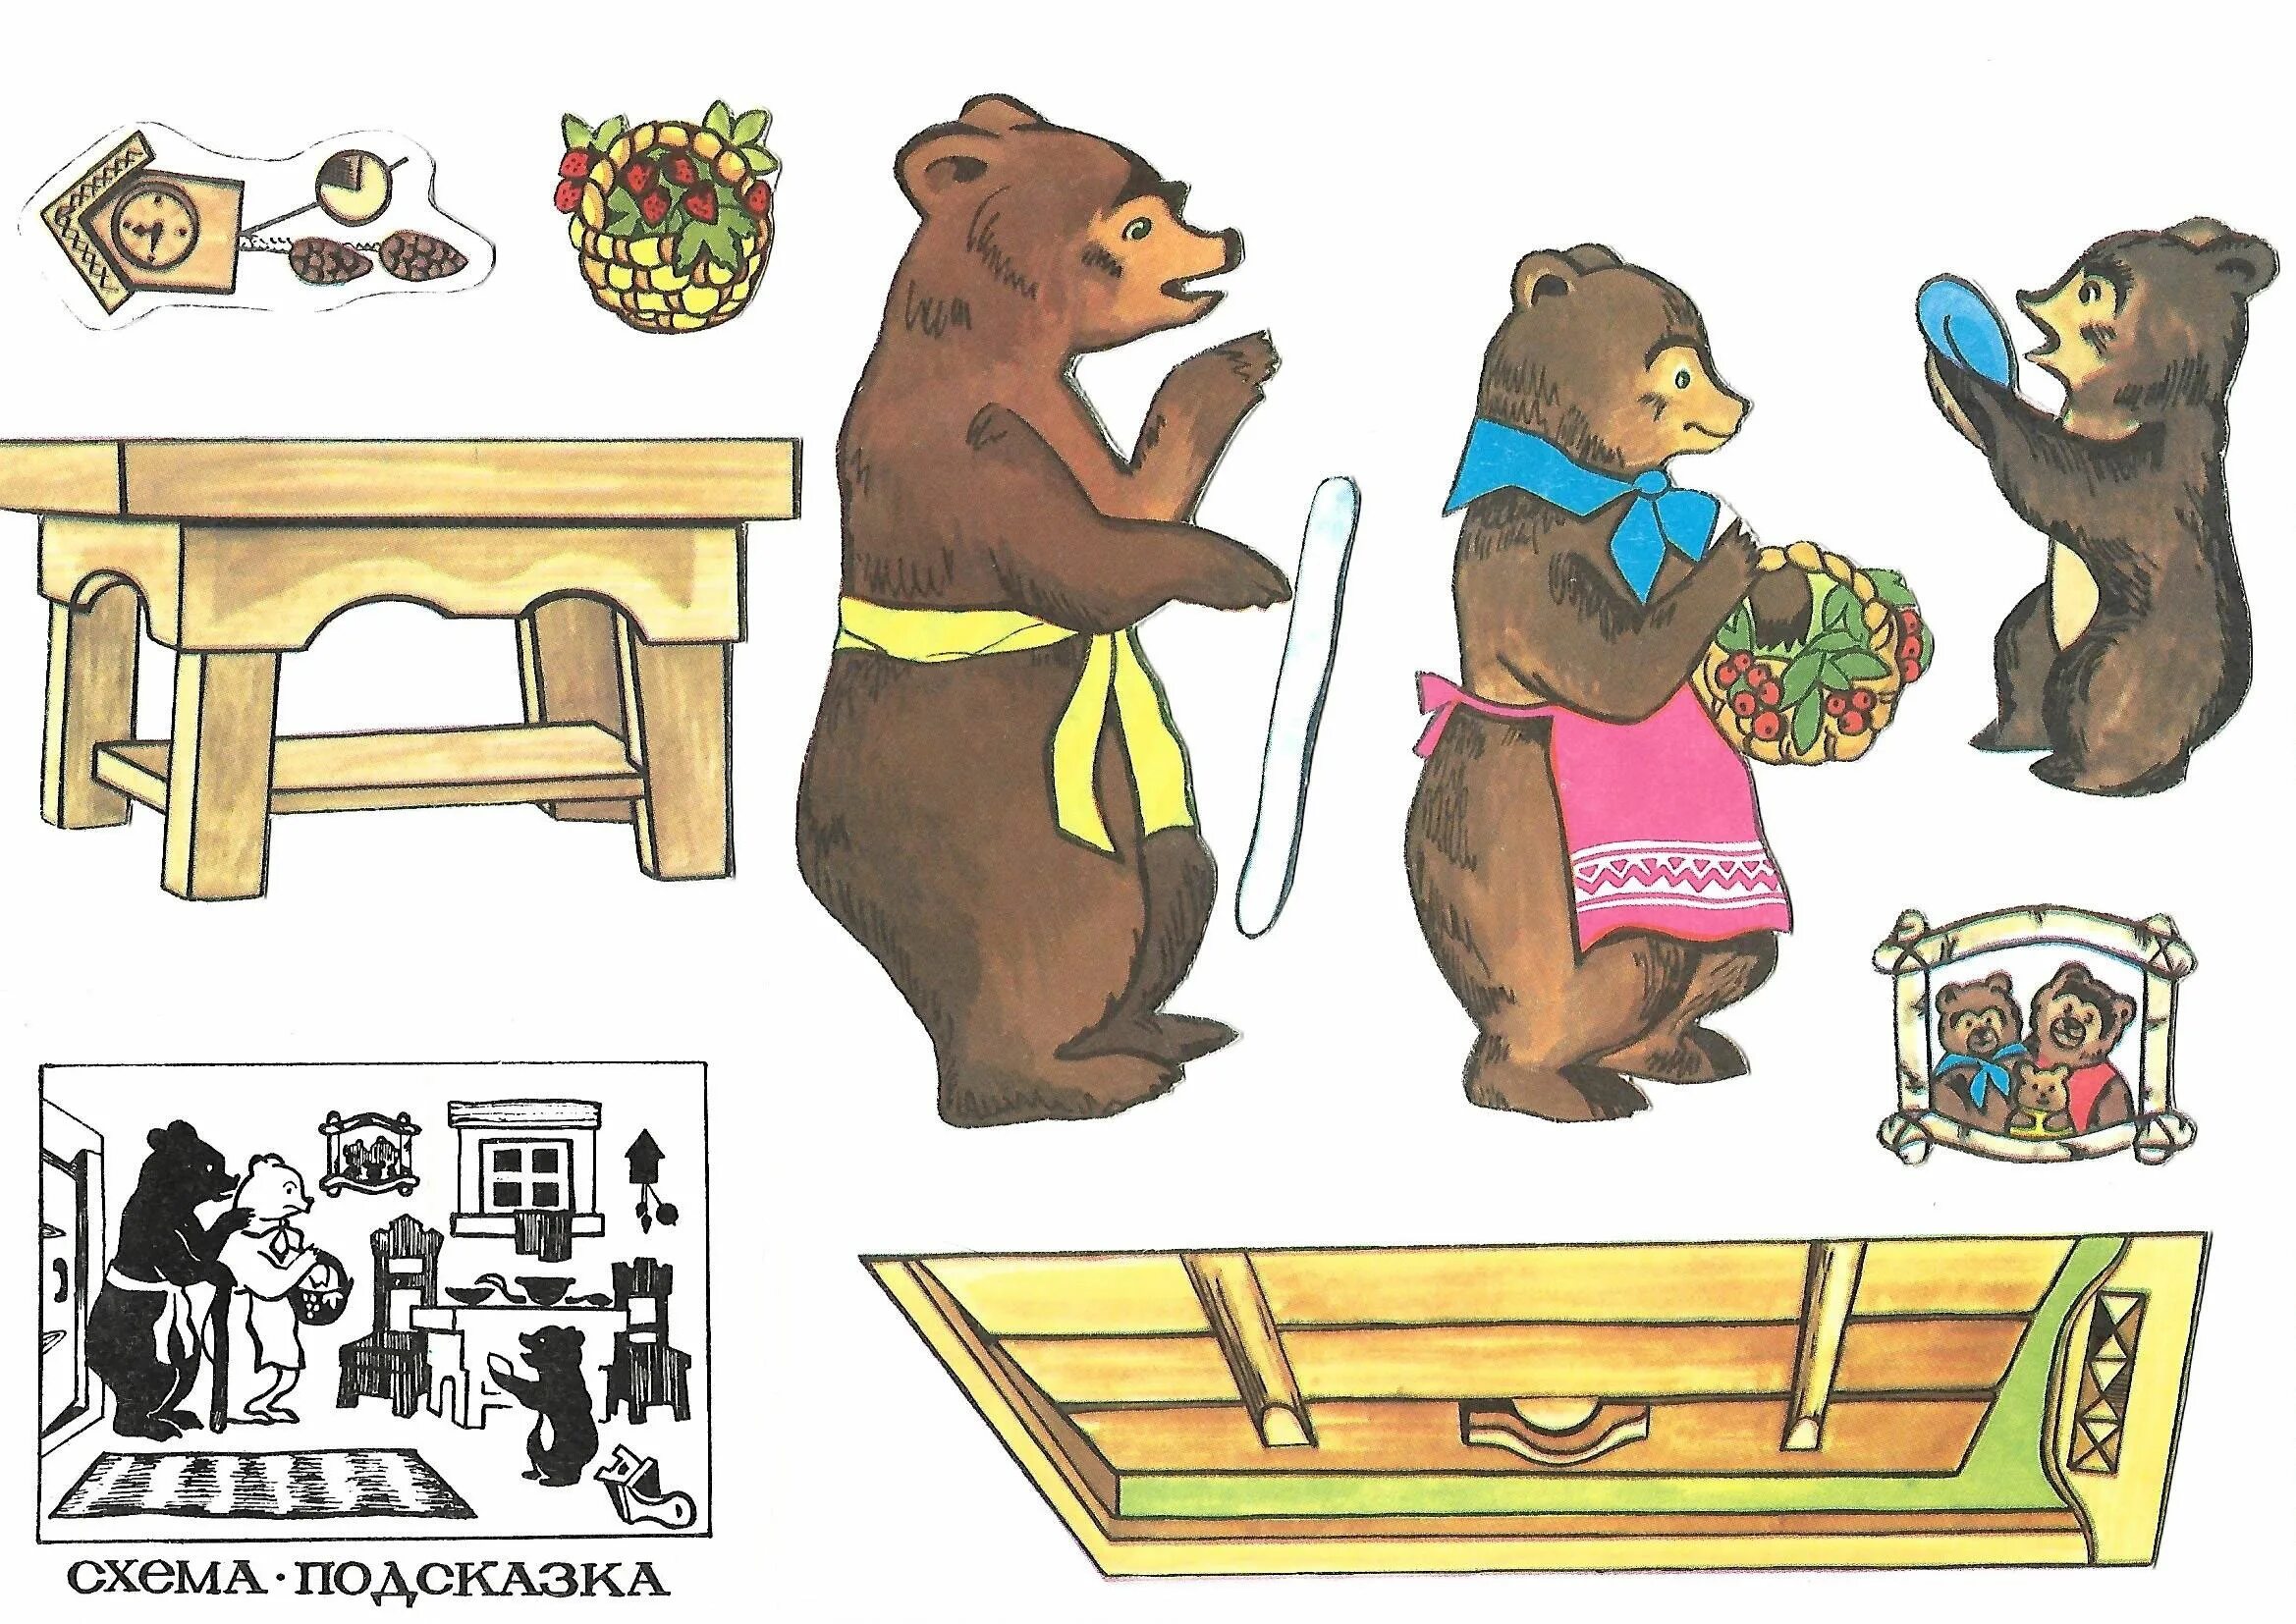 Три медведя сказки игра. Иллюстрации к сказке три медведя. Медведь из сказки три медведя. Три медведя картинки для детей. Иллюстрация к сказке 3 медведя для детей.